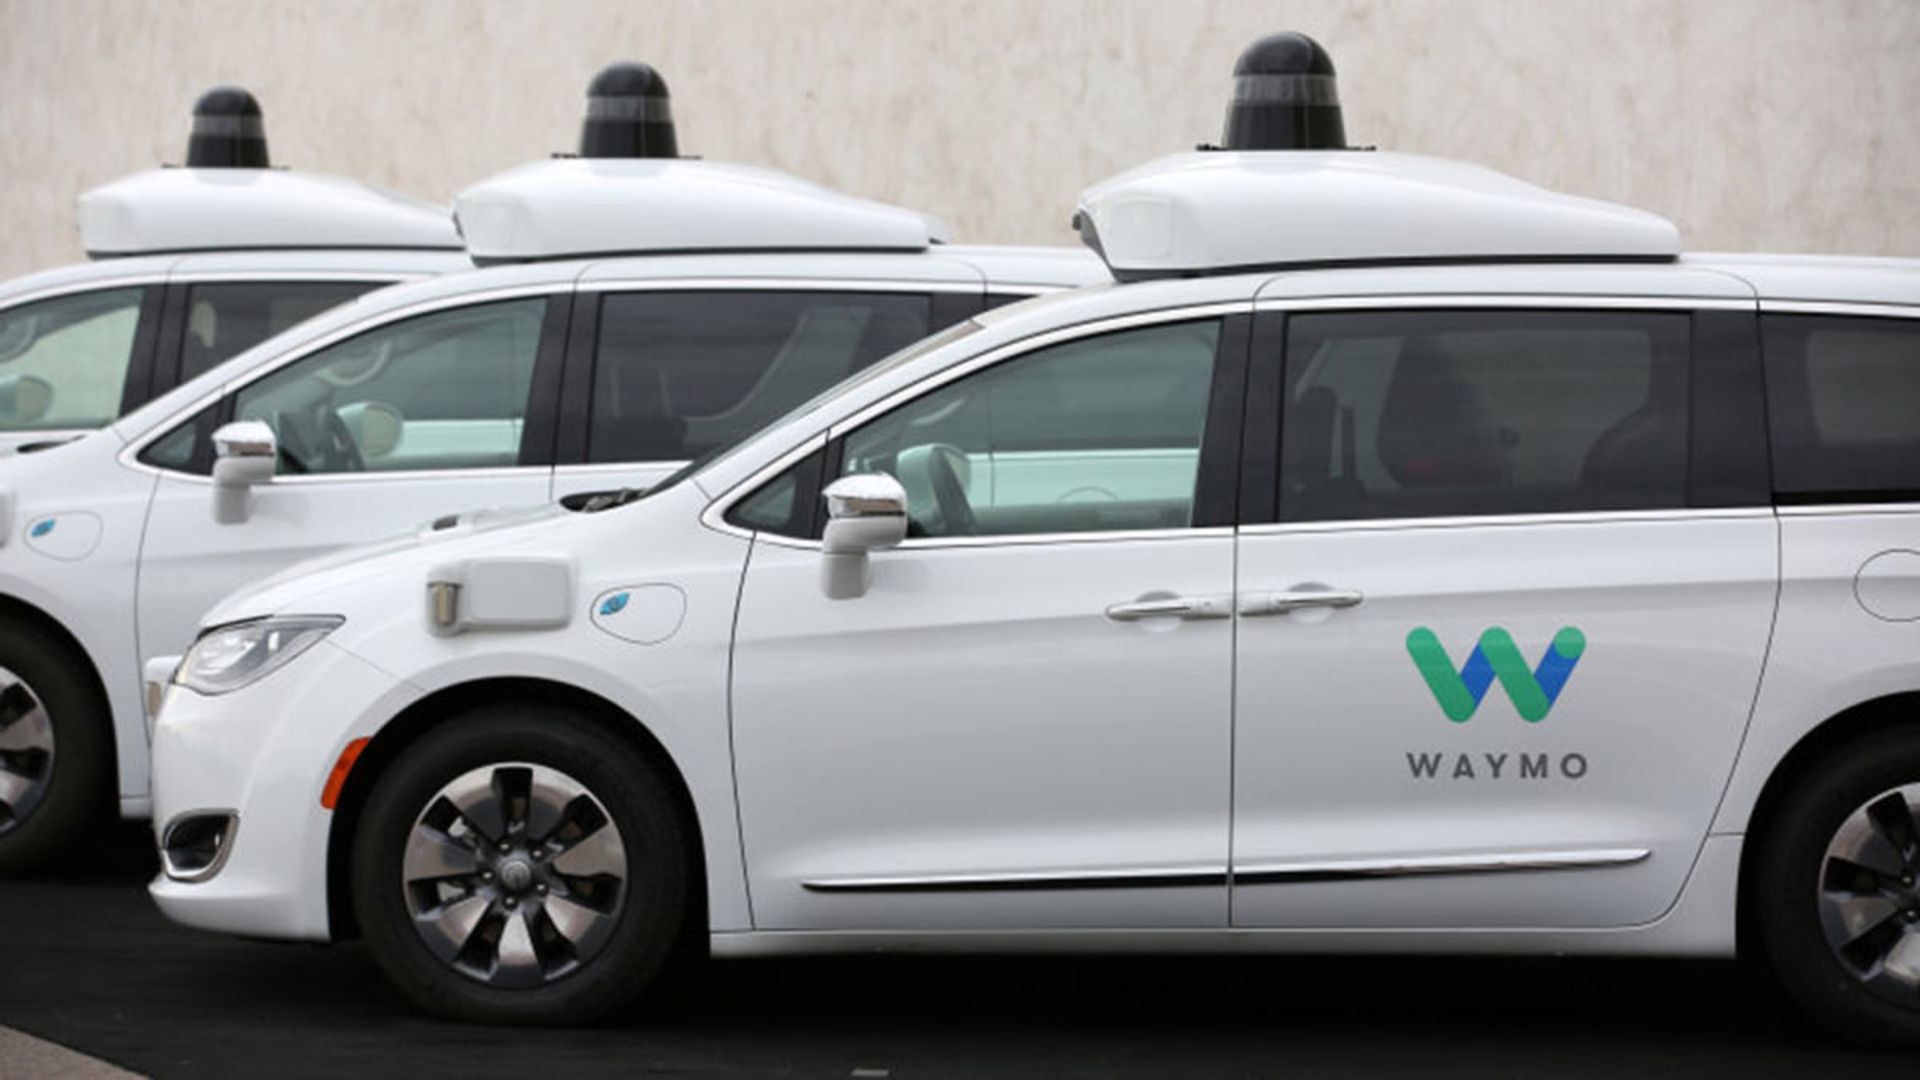 خودرو خودران ویمو / Waymo autonomous car تاکسی اینترنتی 